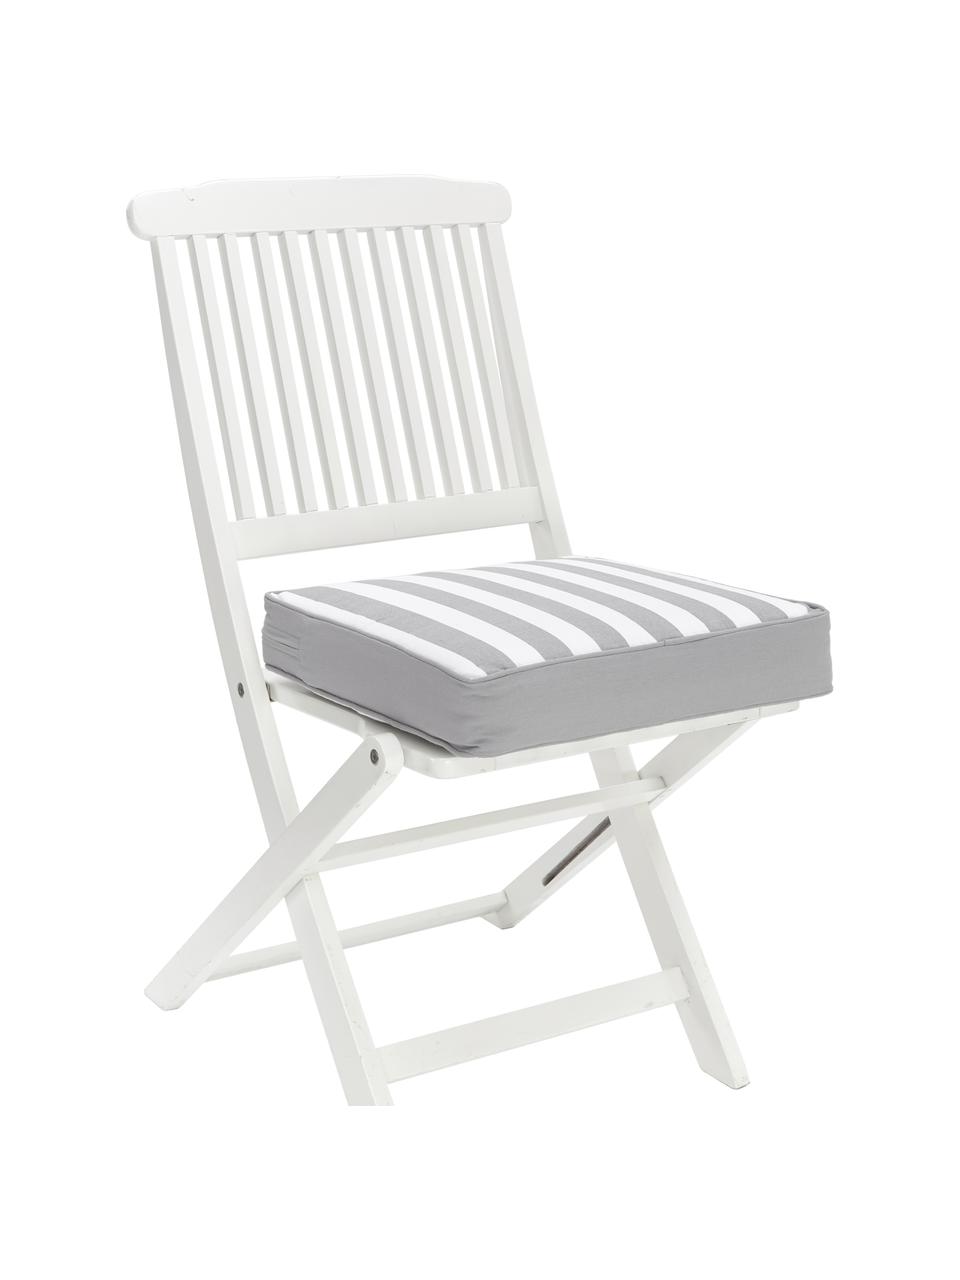 Hohes Sitzkissen Timon, gestreift, Bezug: 100% Baumwolle, Grau, Weiss, B 40 x L 40 cm